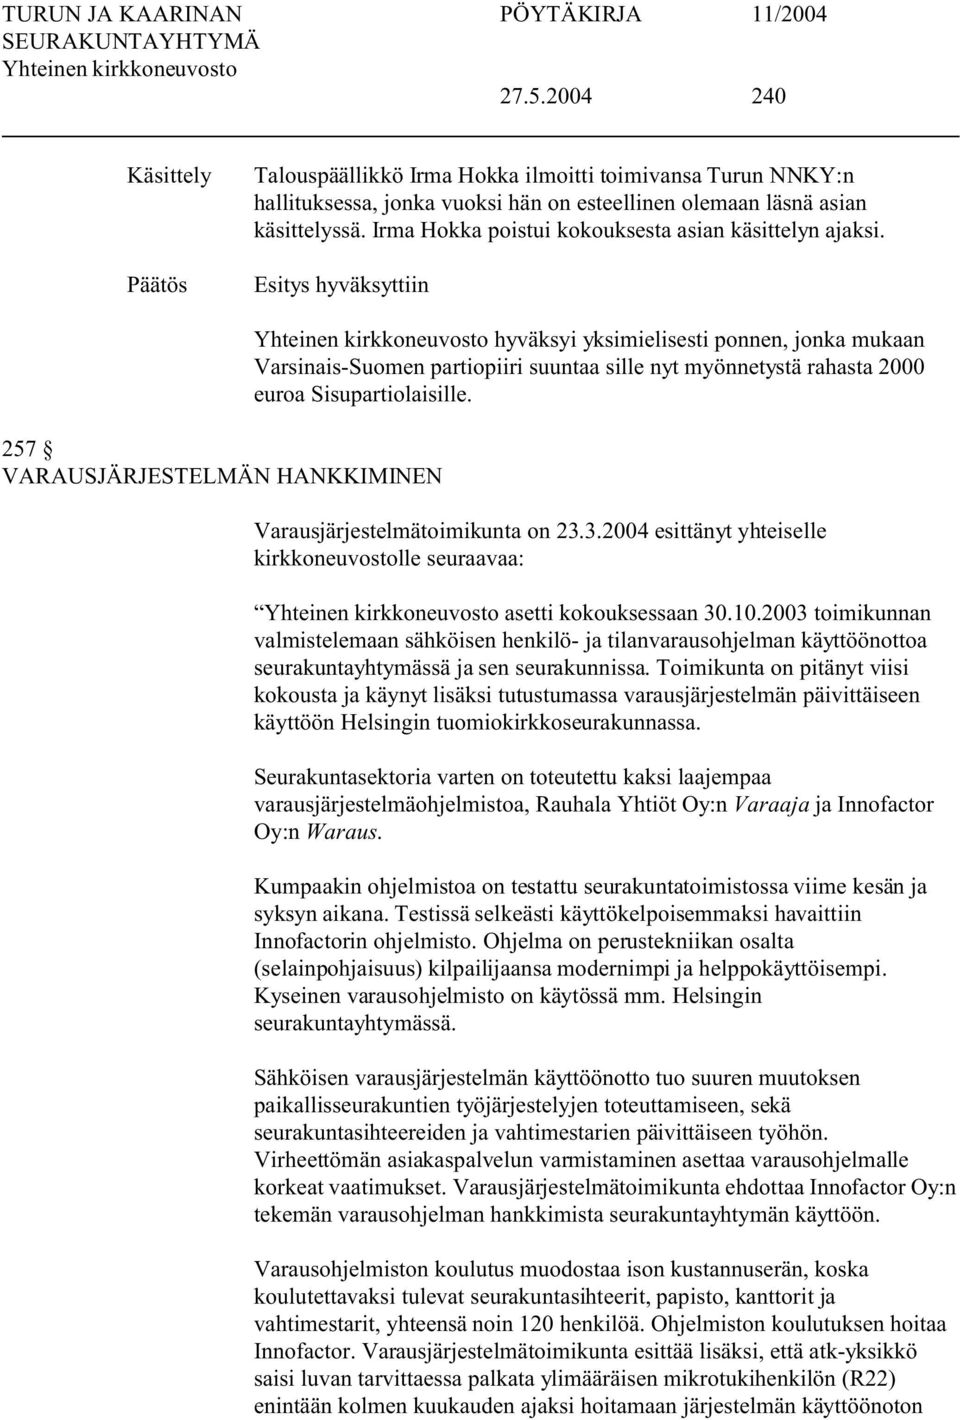 hyväksyttiin 257 VARAUJÄRJETELMÄN HANKKIMINEN hyväksyi yksimielisesti ponnen, jonka mukaan Varsinais-uomen partiopiiri suuntaa sille nyt myönnetystä rahasta 2000 euroa isupartiolaisille.